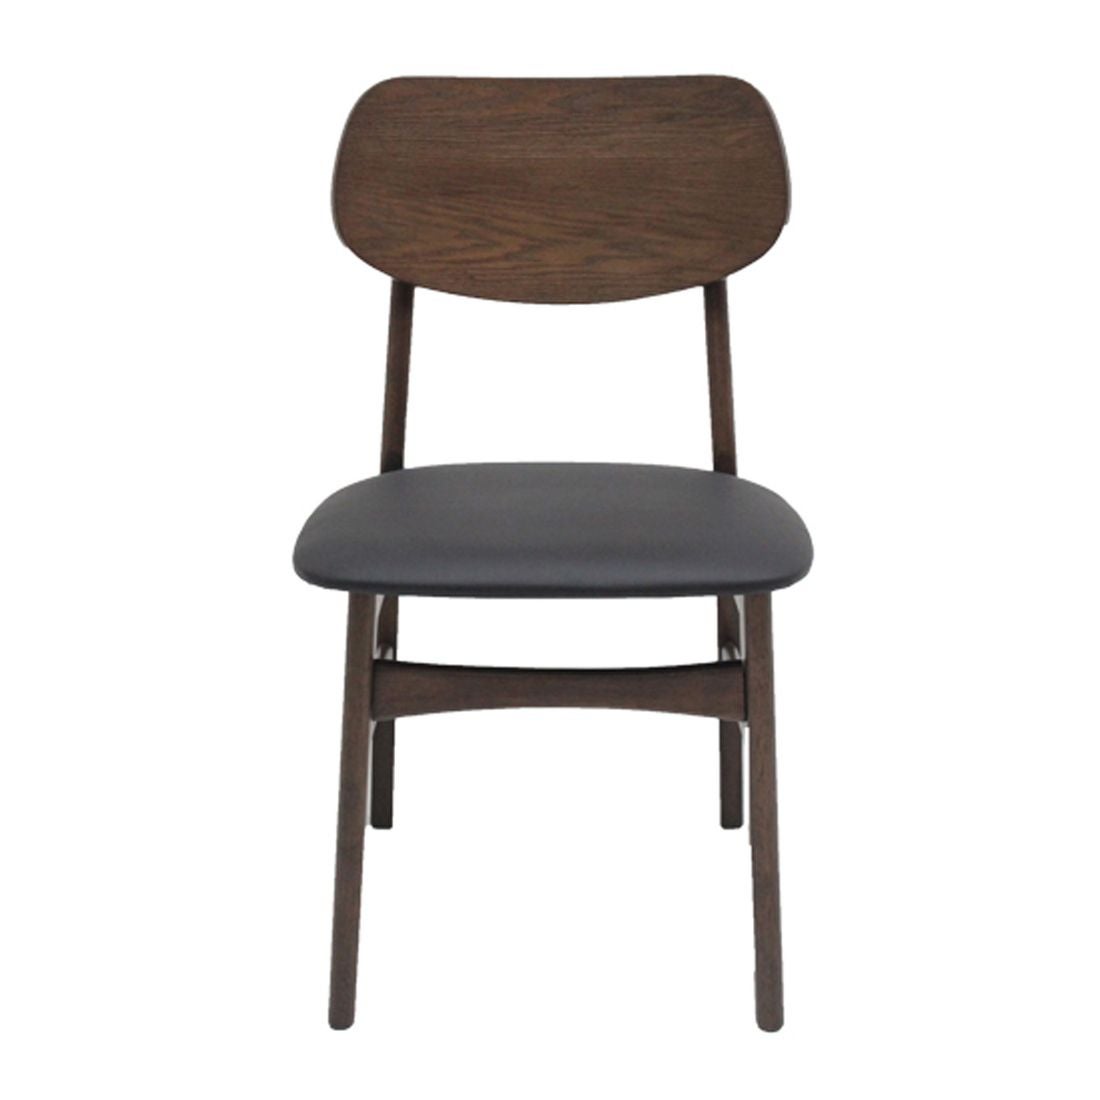 เก้าอี้ทานอาหาร เก้าอี้ไม้เบาะหนัง รุ่น Moko-SB Design Square